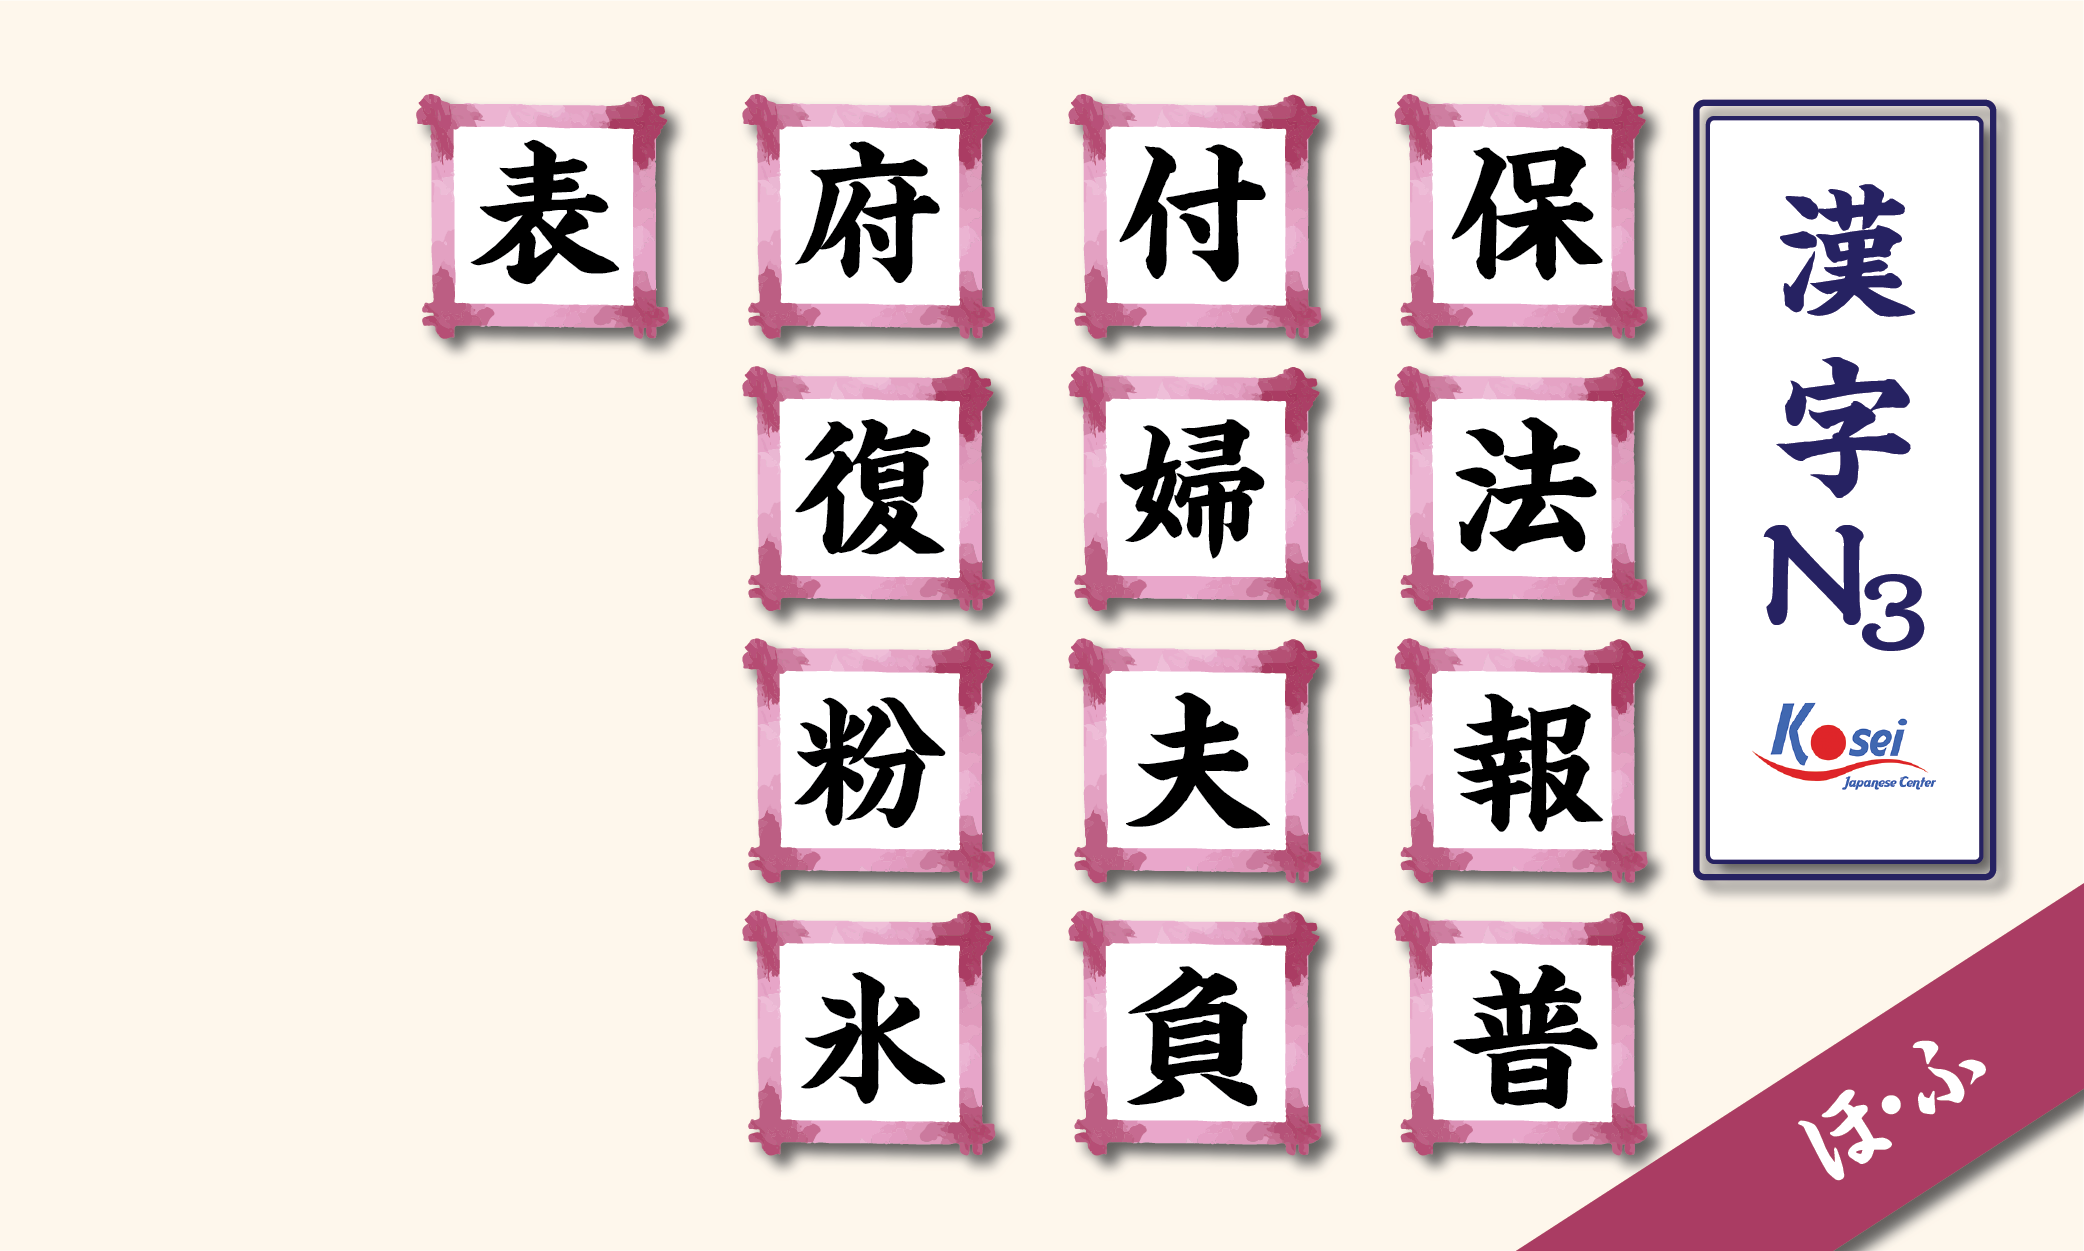 kanji n3 theo âm on hàng h